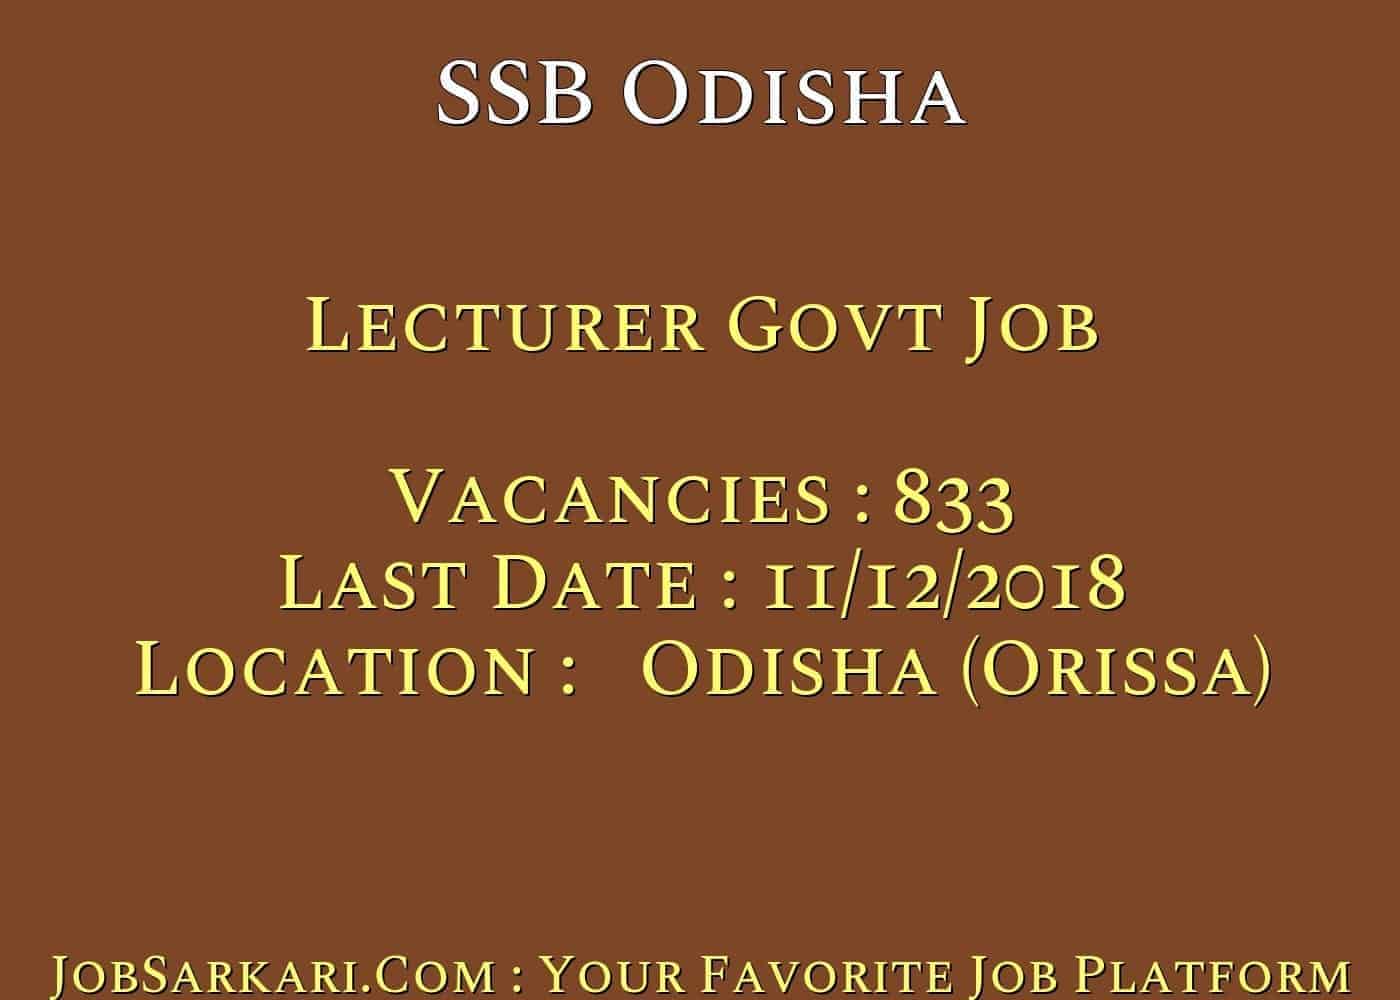 SSB Odisha Recruitment 2018 for Lecturer Govt Job